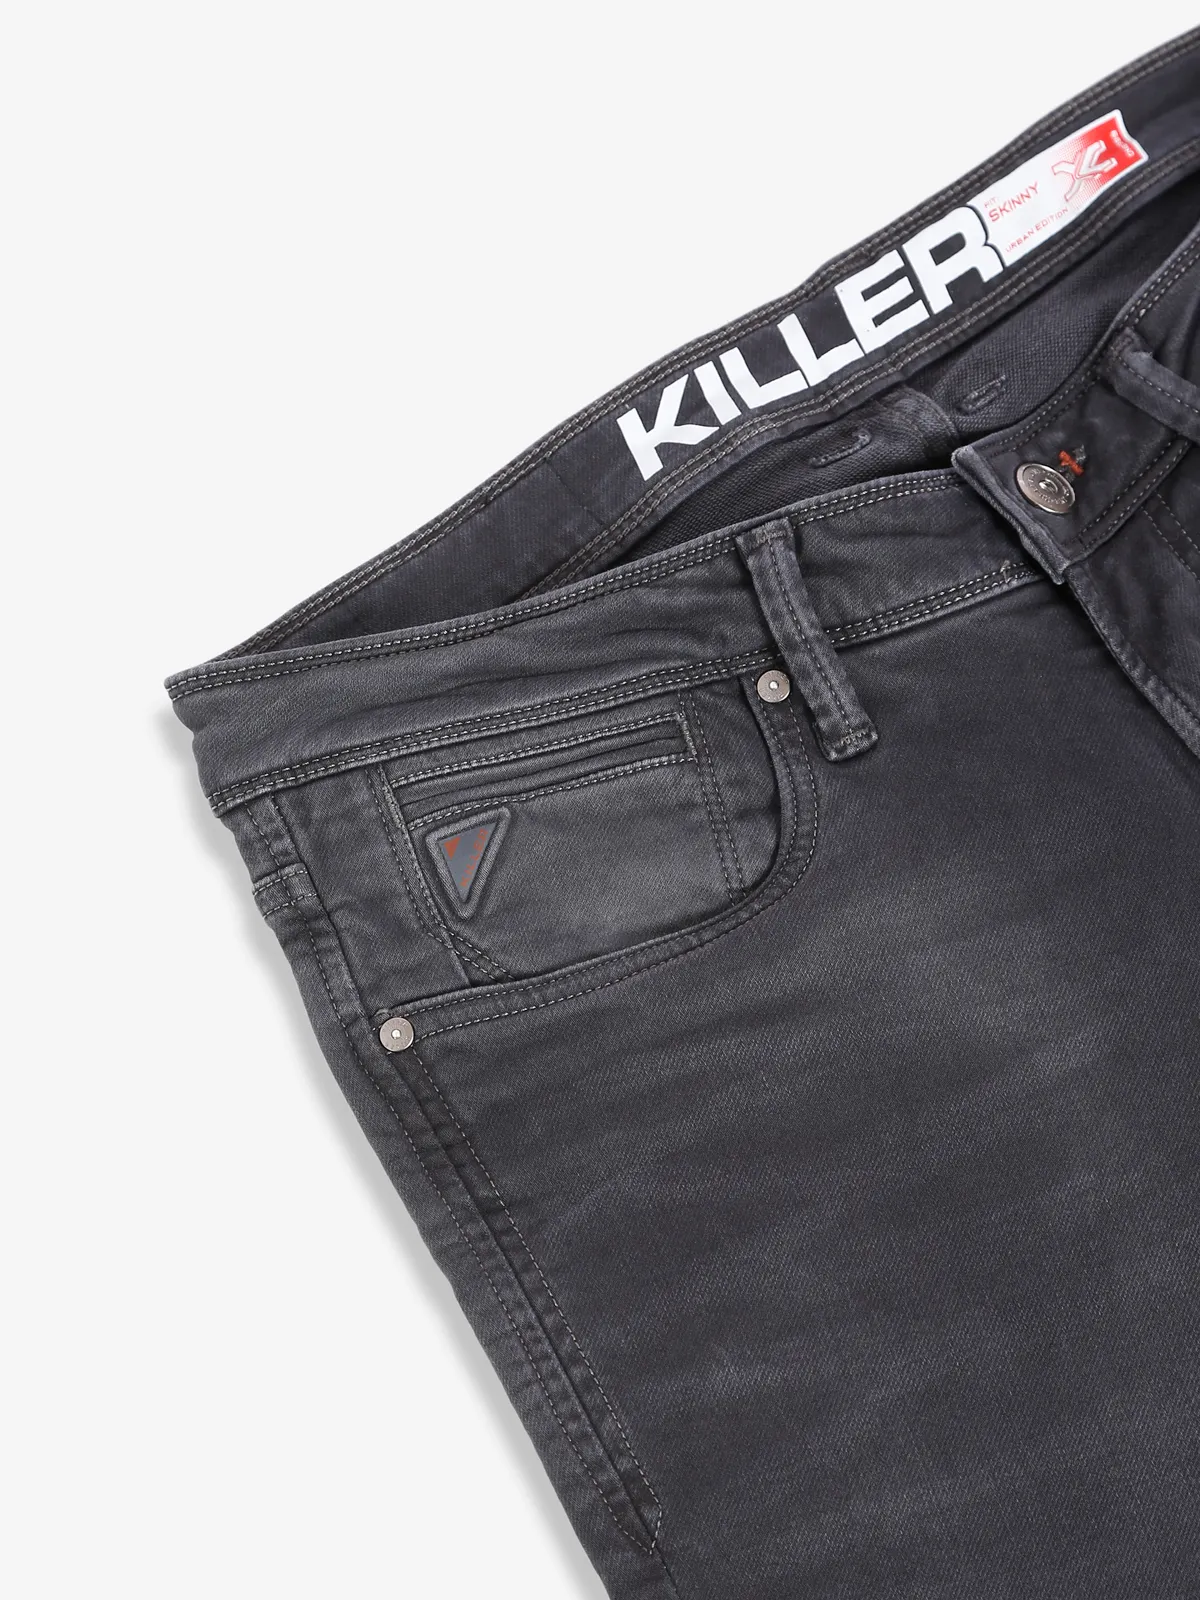 Killer dark grey skinny fit jeans